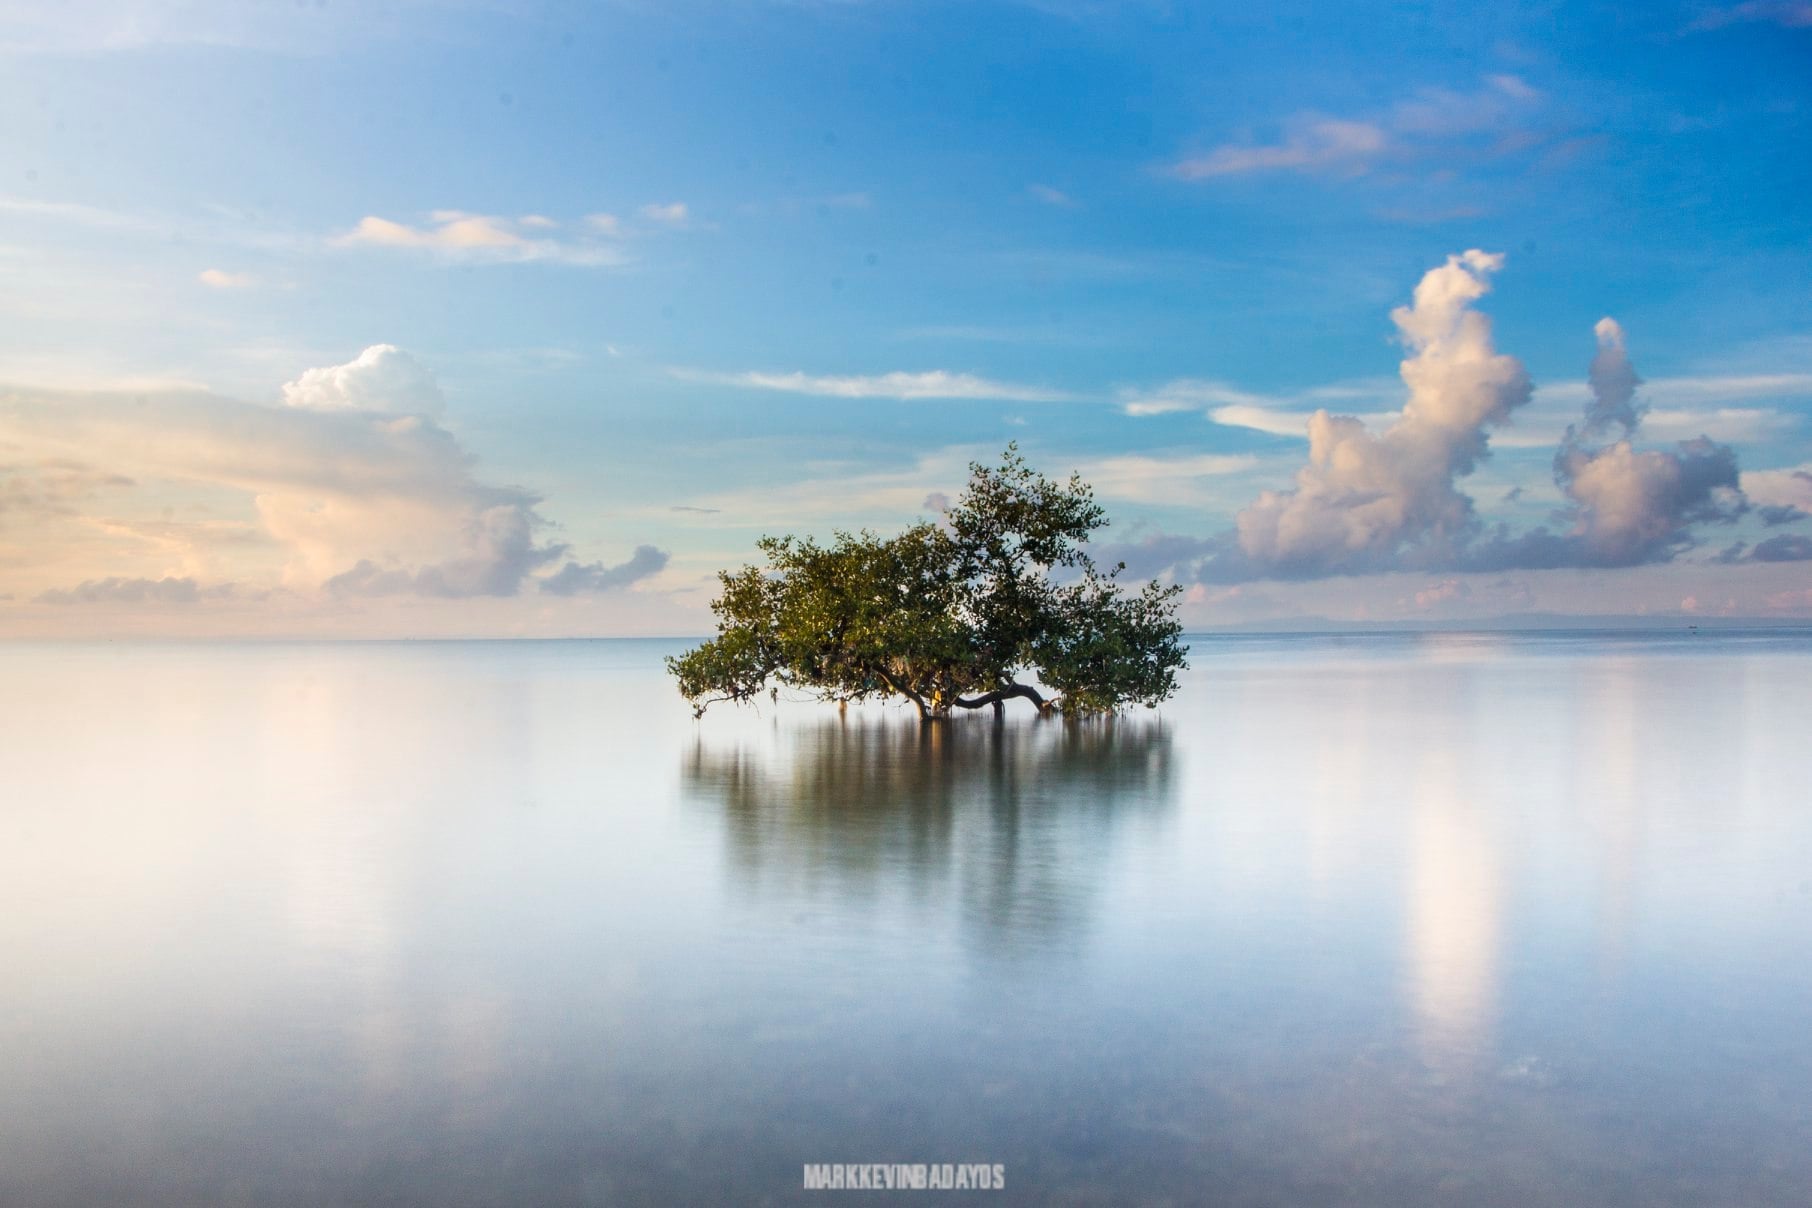 Cebuano photographer’s photo of mangrove tree makes it to UNESCO Thai exhibit